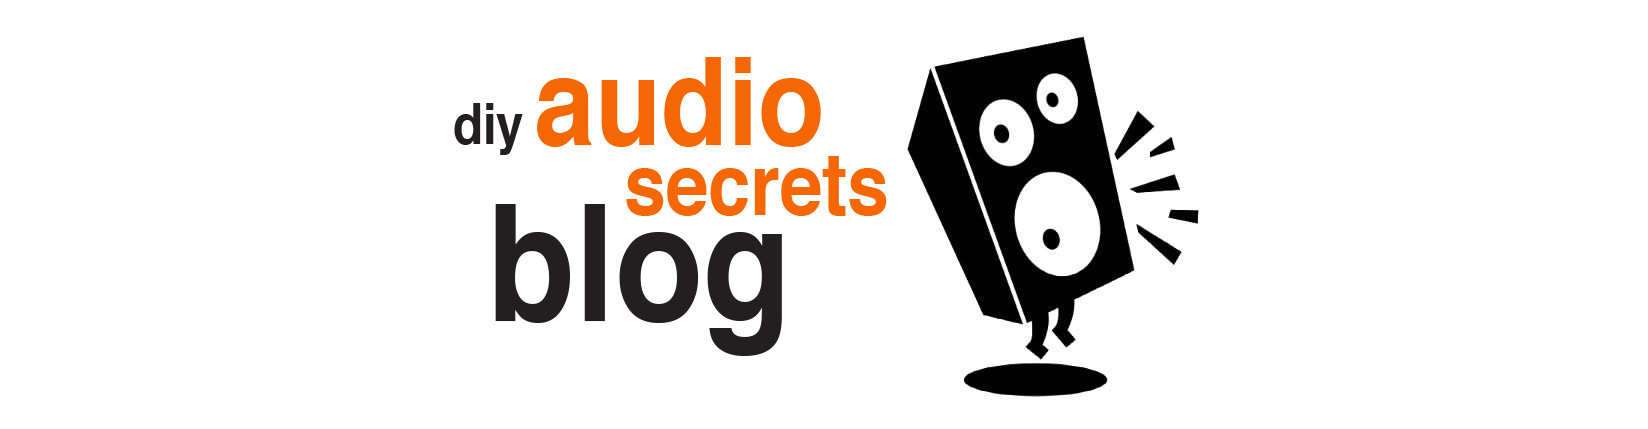 DIY audio secrets blog